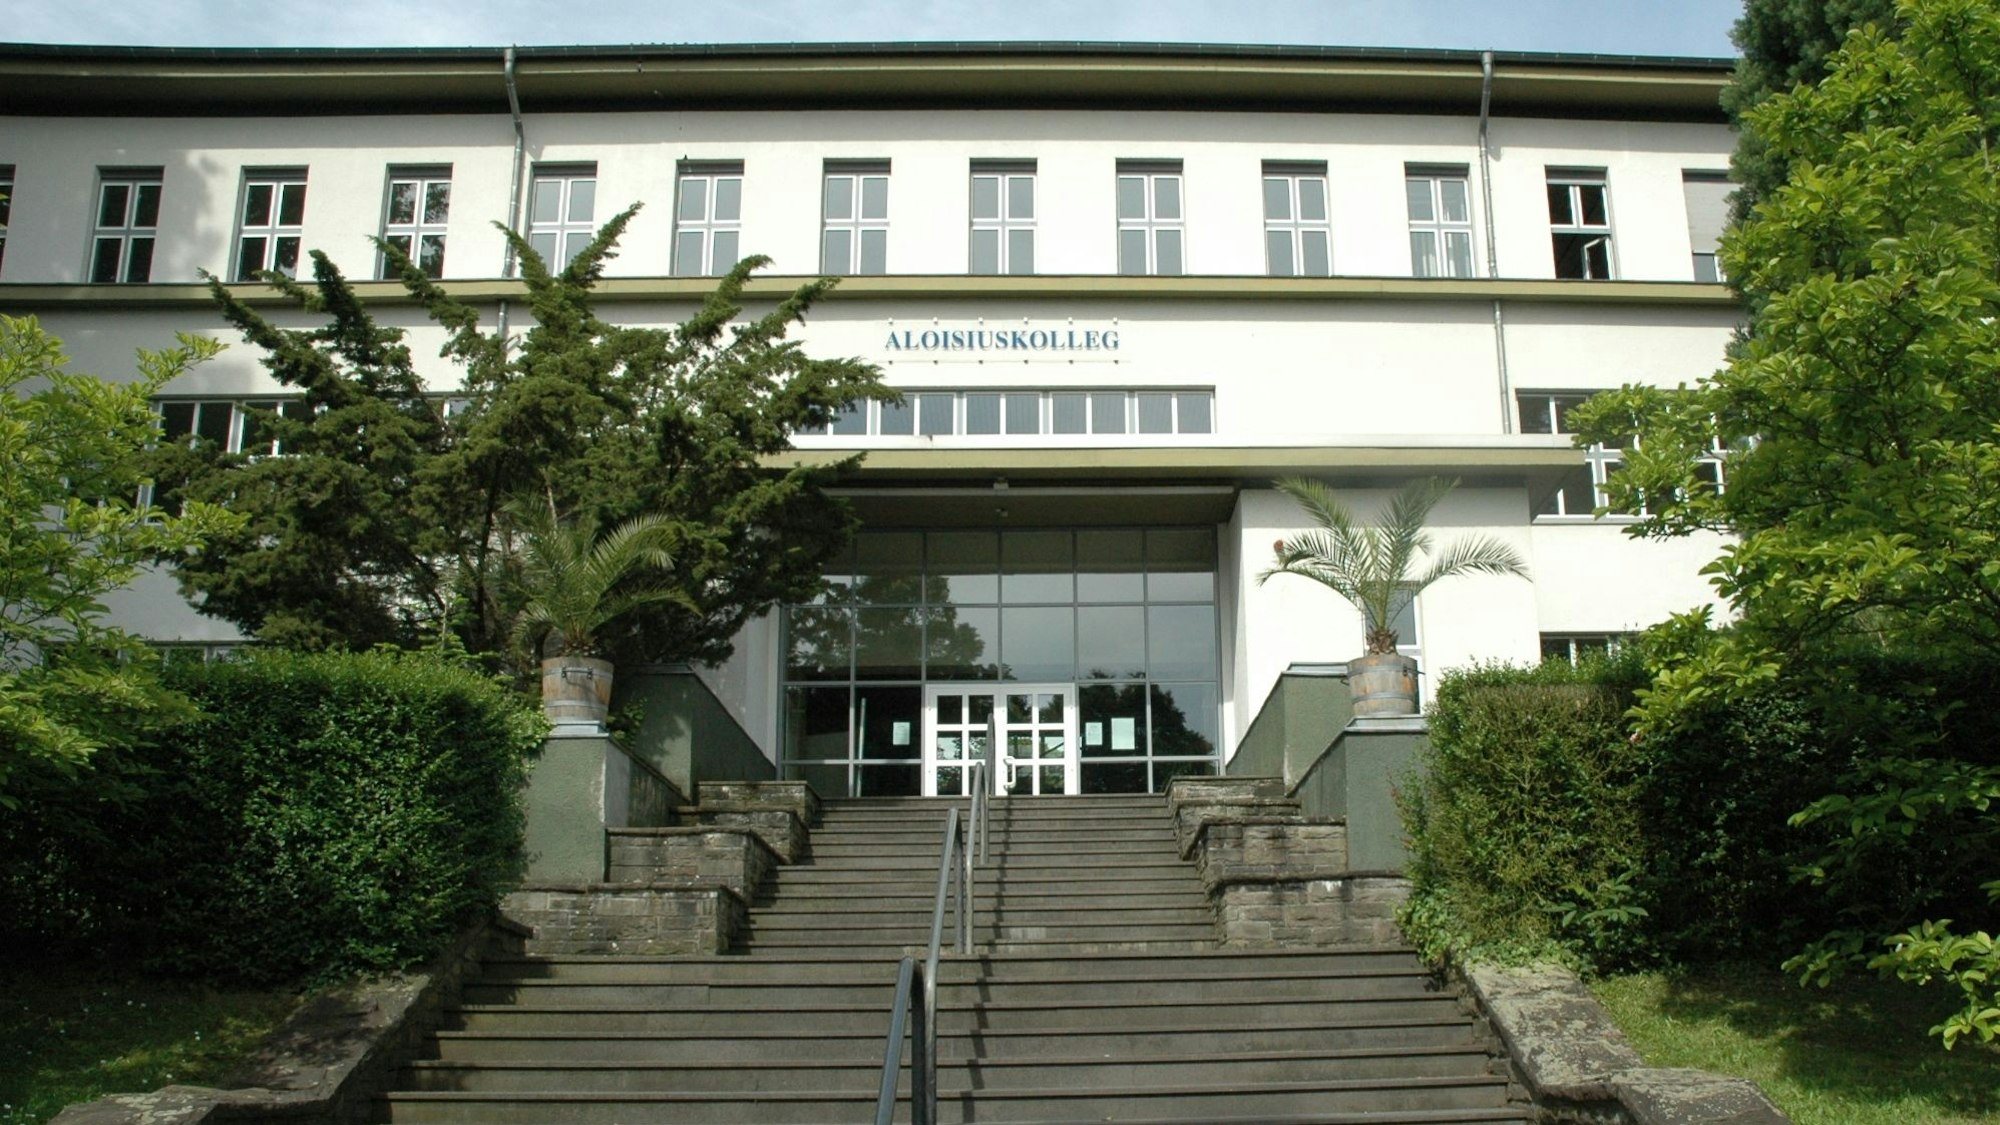 Der Haupteingang des Gebäudes, über dem Aloisiuskolleg steht.